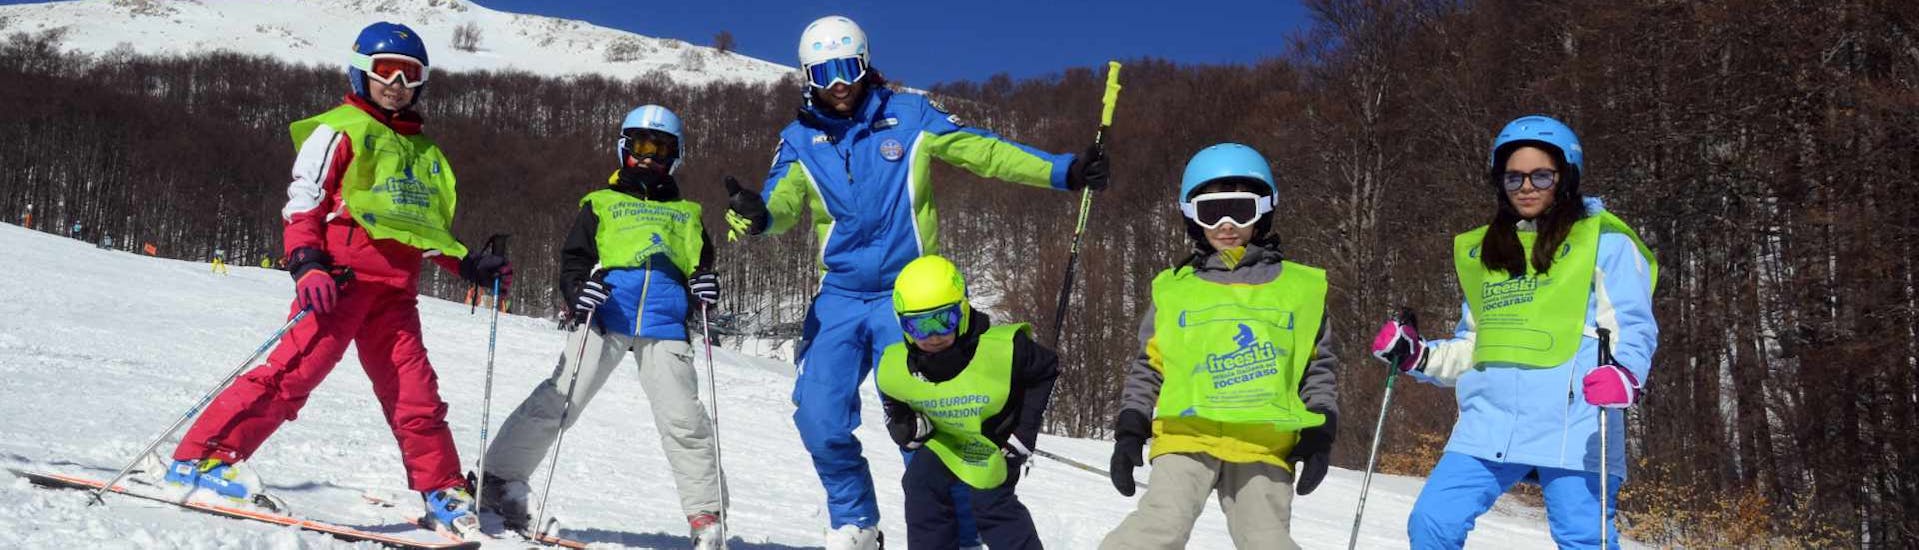 Clases de esquí para niños a partir de 5 años para avanzados.